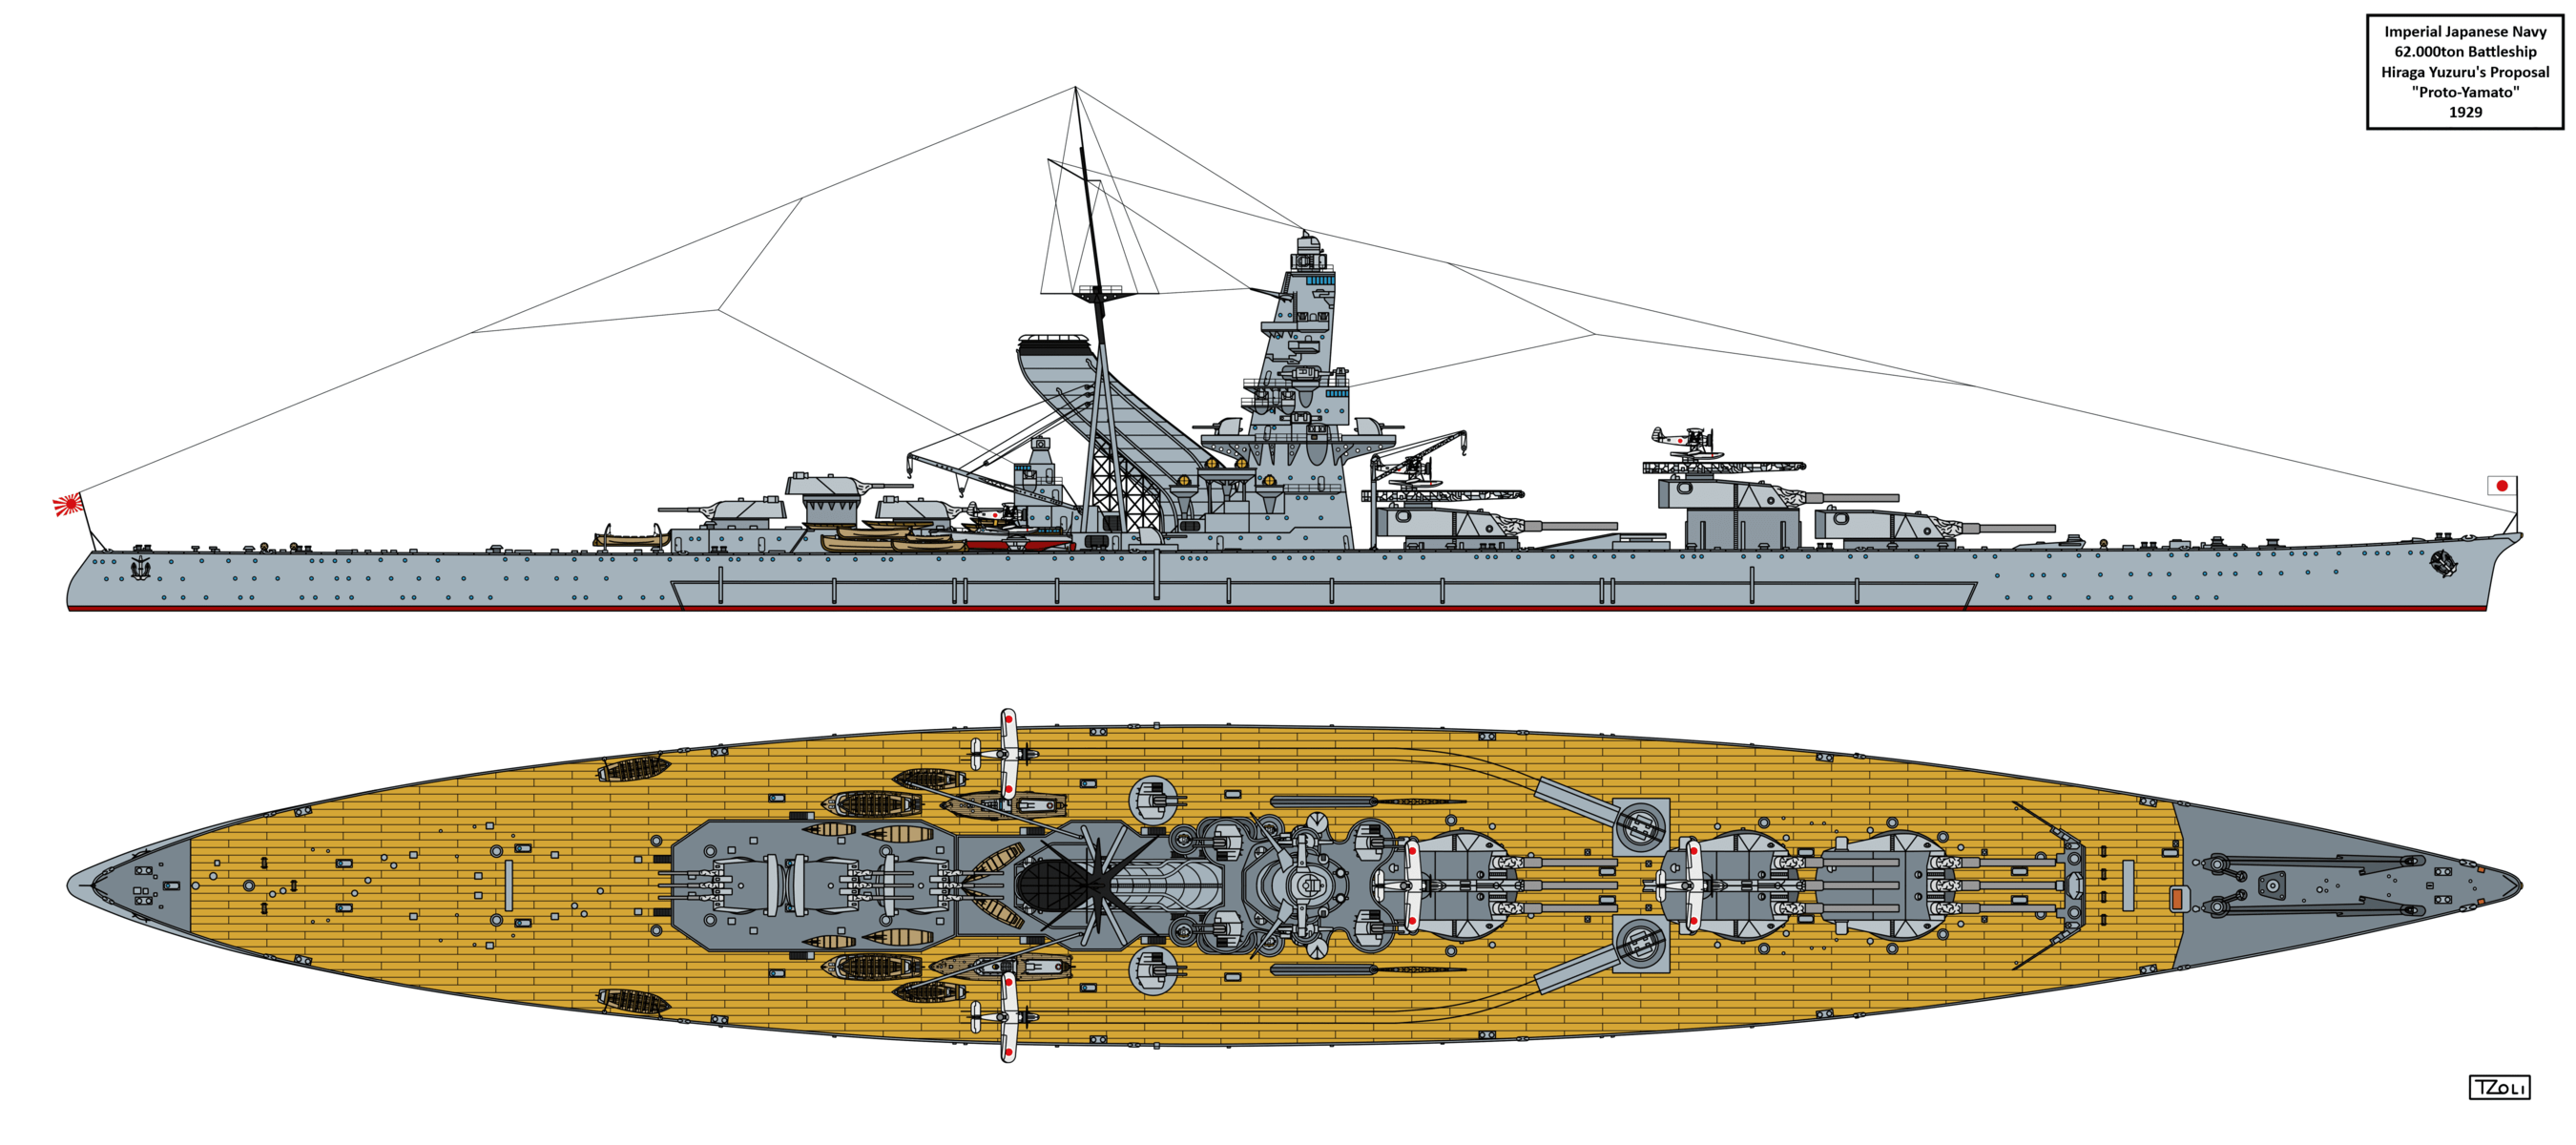 大和型戦艦を生んだ「A-140」の変遷